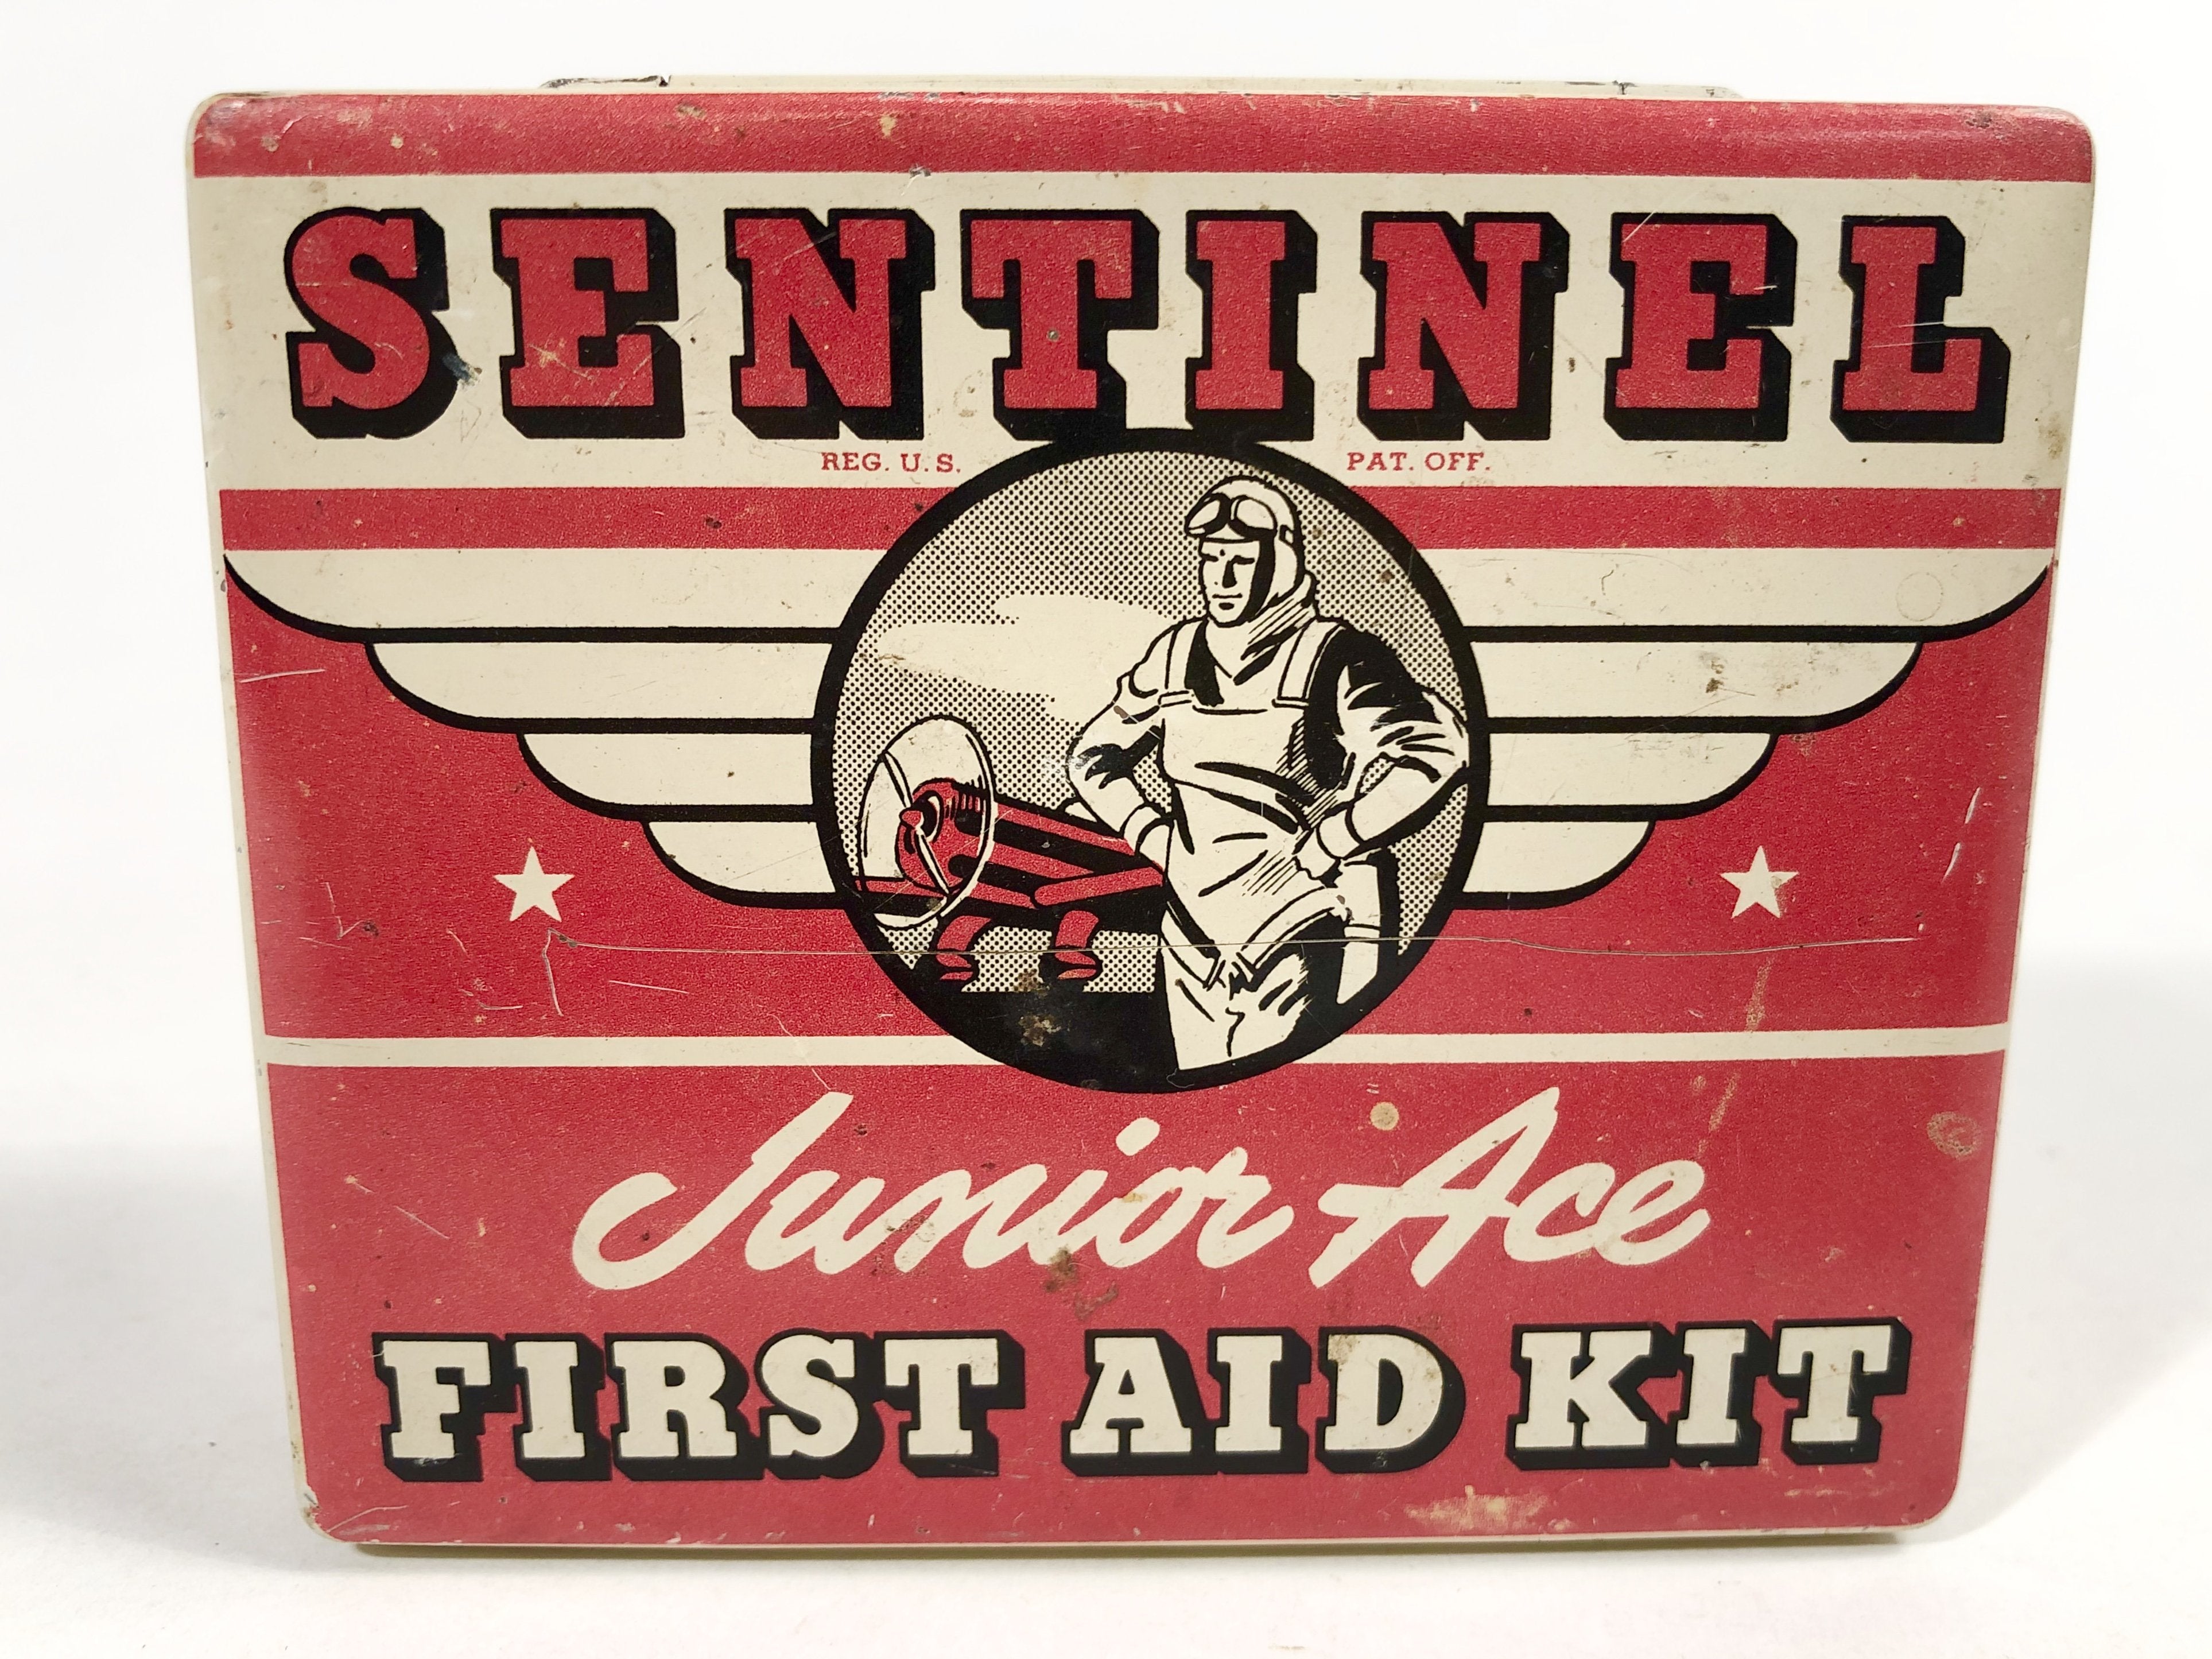 Small intermediate Fabric First Aid Kit - Santinel